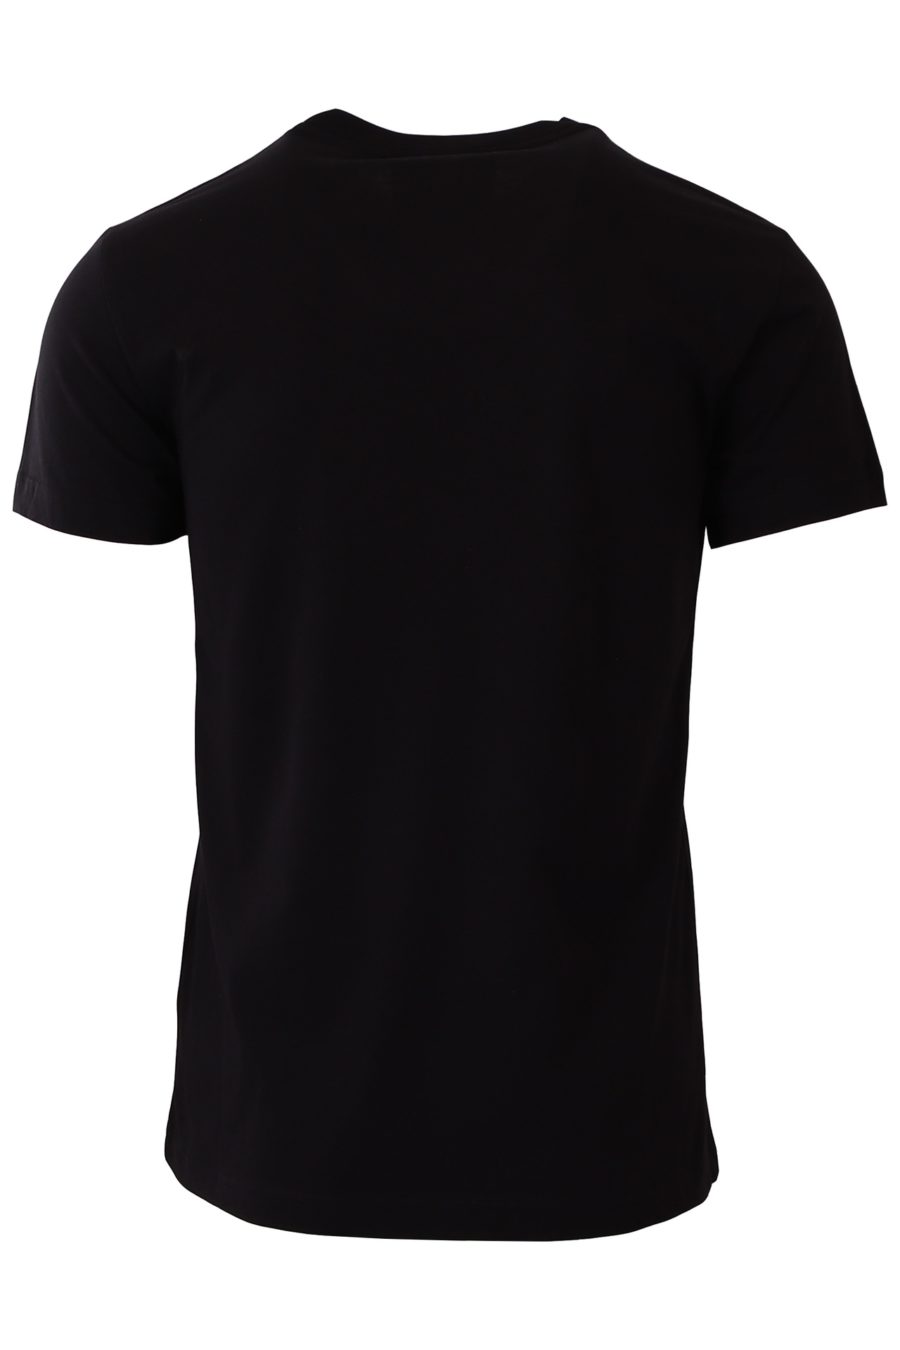 T-shirt Versace Jeans Couture preta com logótipo barroco dourado - 213793409d347ae7fd7e4aa4f36d69da6f7f15e3